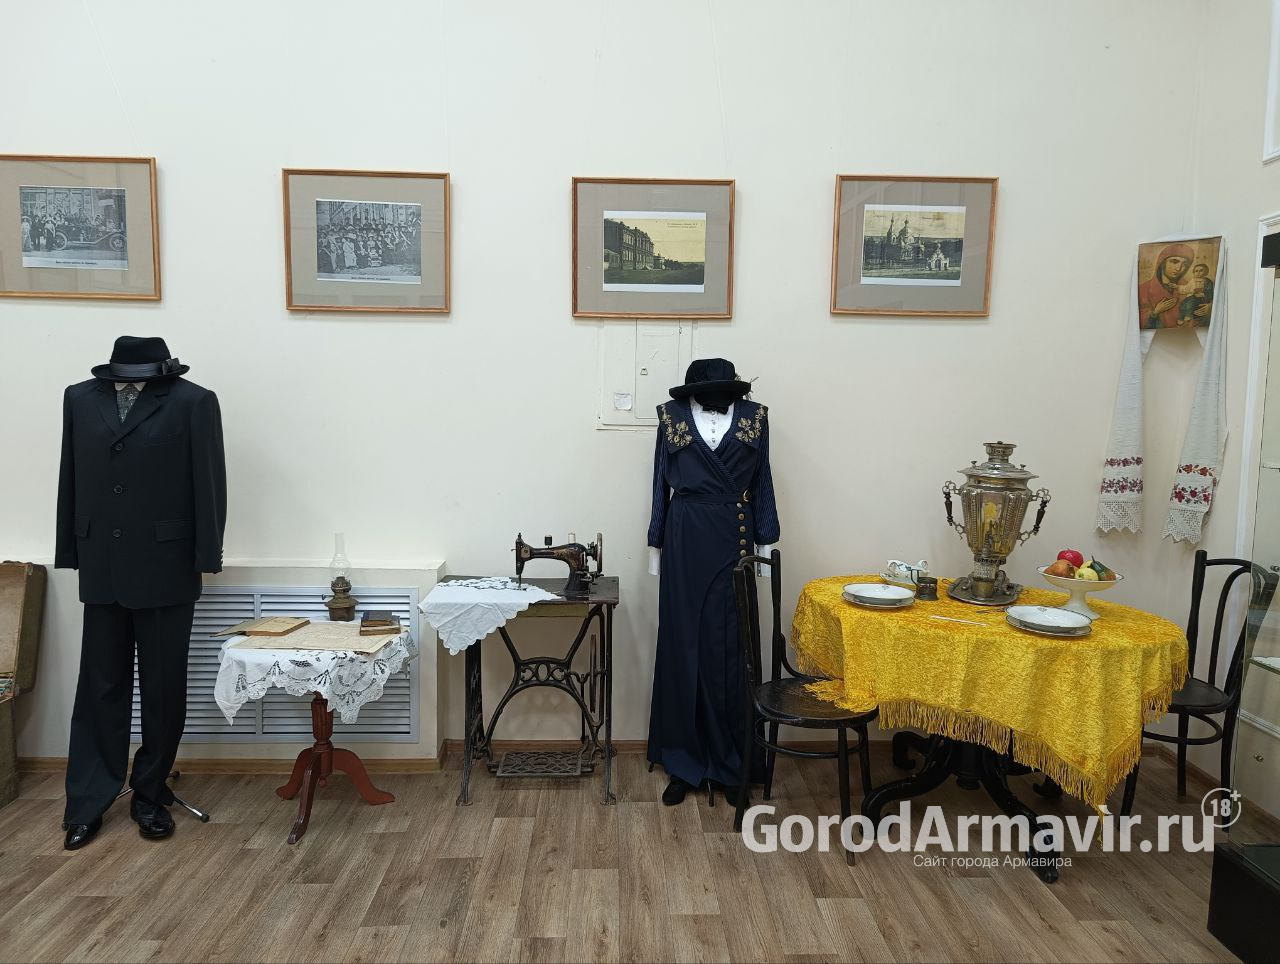 Более 80 уникальных экспонатов можно увидеть на выставке «Старинный Армавир»